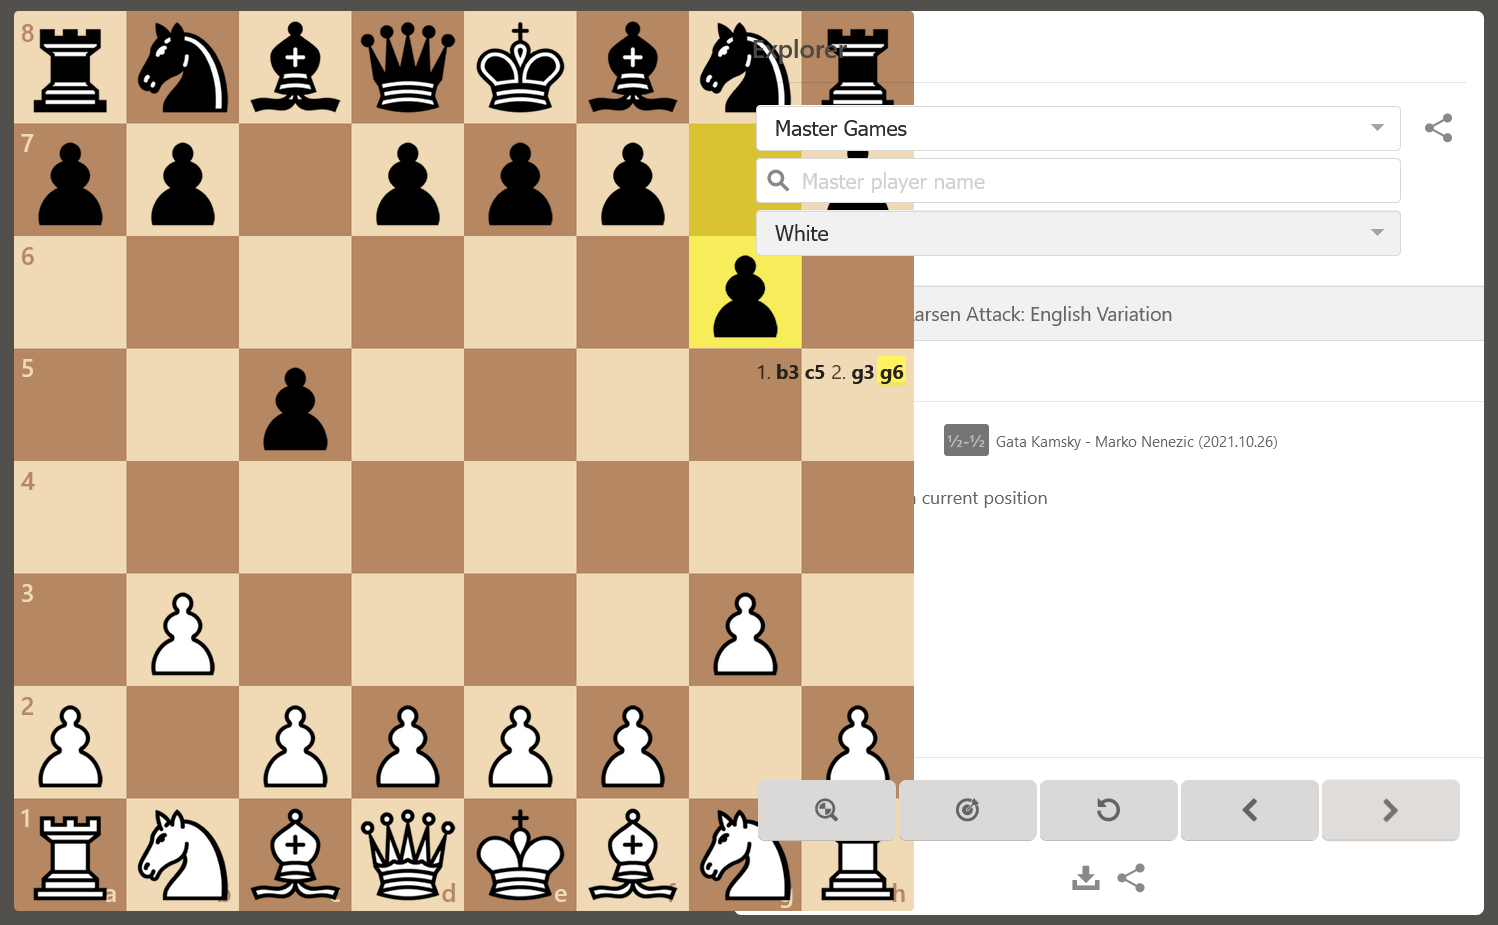 Chess Opening Explorer